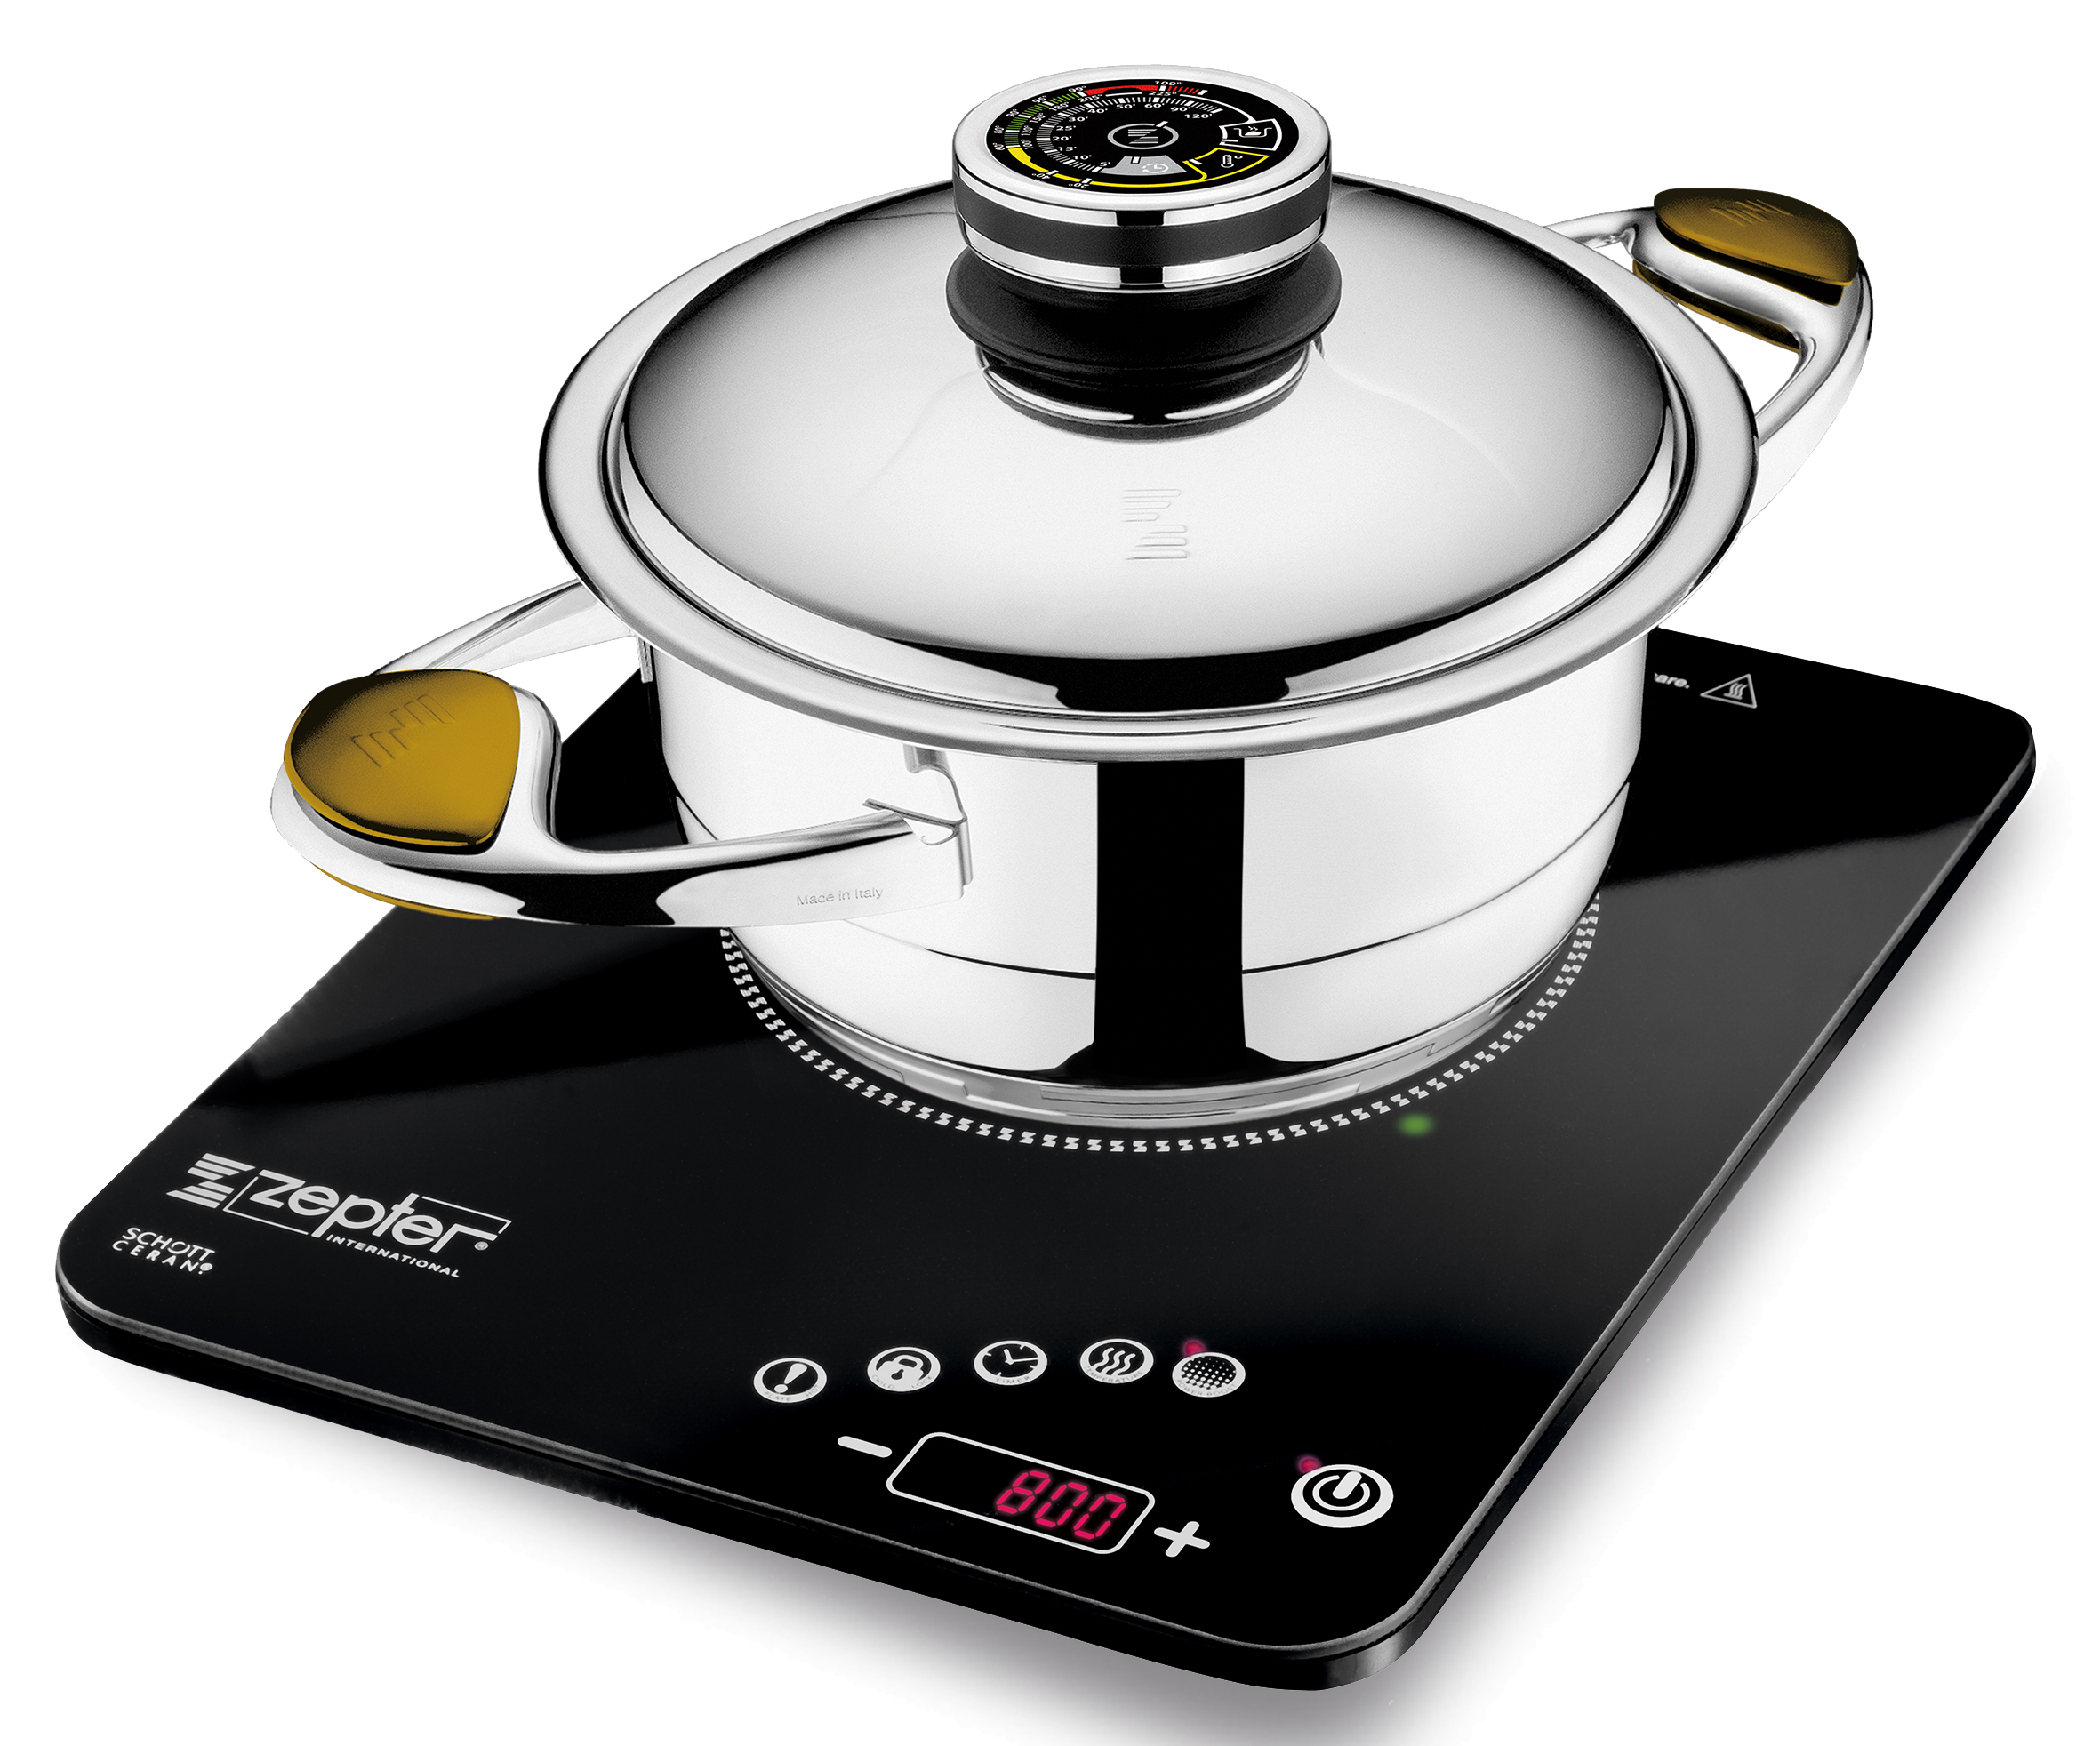 Sve Zepter Masterpiece posude imaju patentirano akutermalno dno, koje savršeno radi na novom Zepterovom indukcijskom kuhalu.